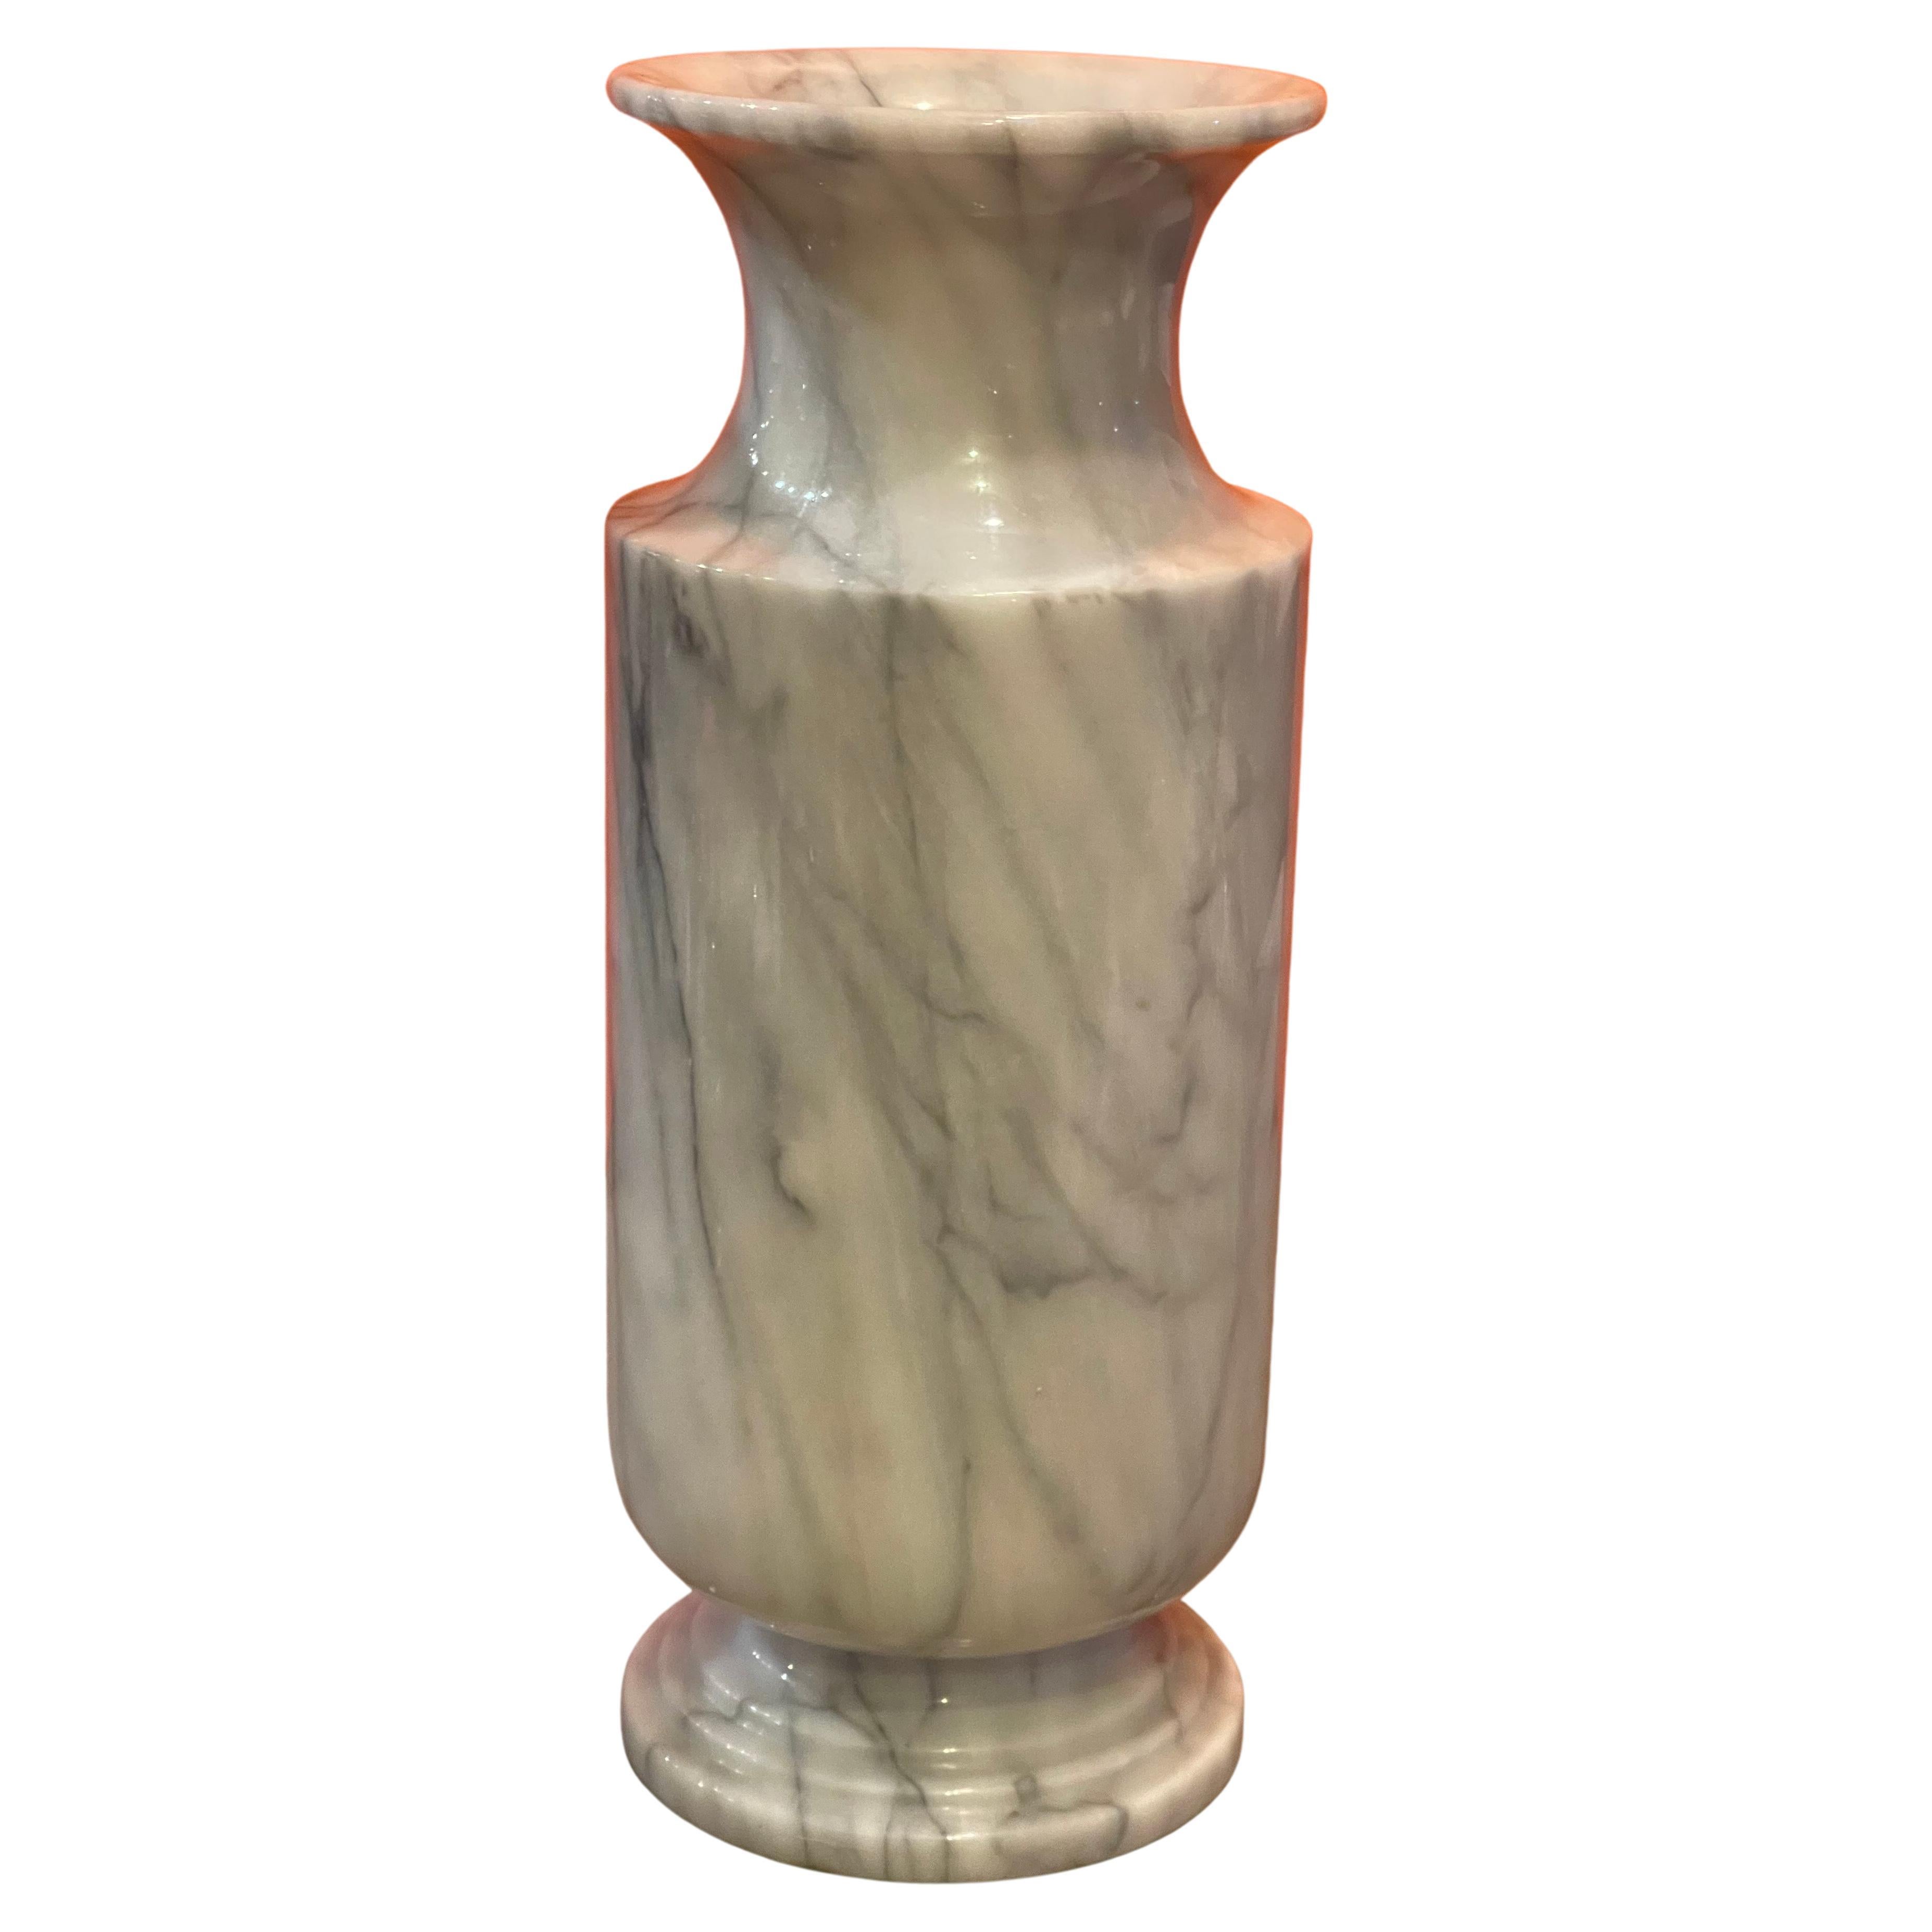 Grand vase post-moderne italien en marbre de Carrare, vers les années 1970. Le vase est principalement de couleur blanche avec des veines grises et noires. Le vase est en très bon état vintage, sans éclats ni fissures et mesure 7,5 